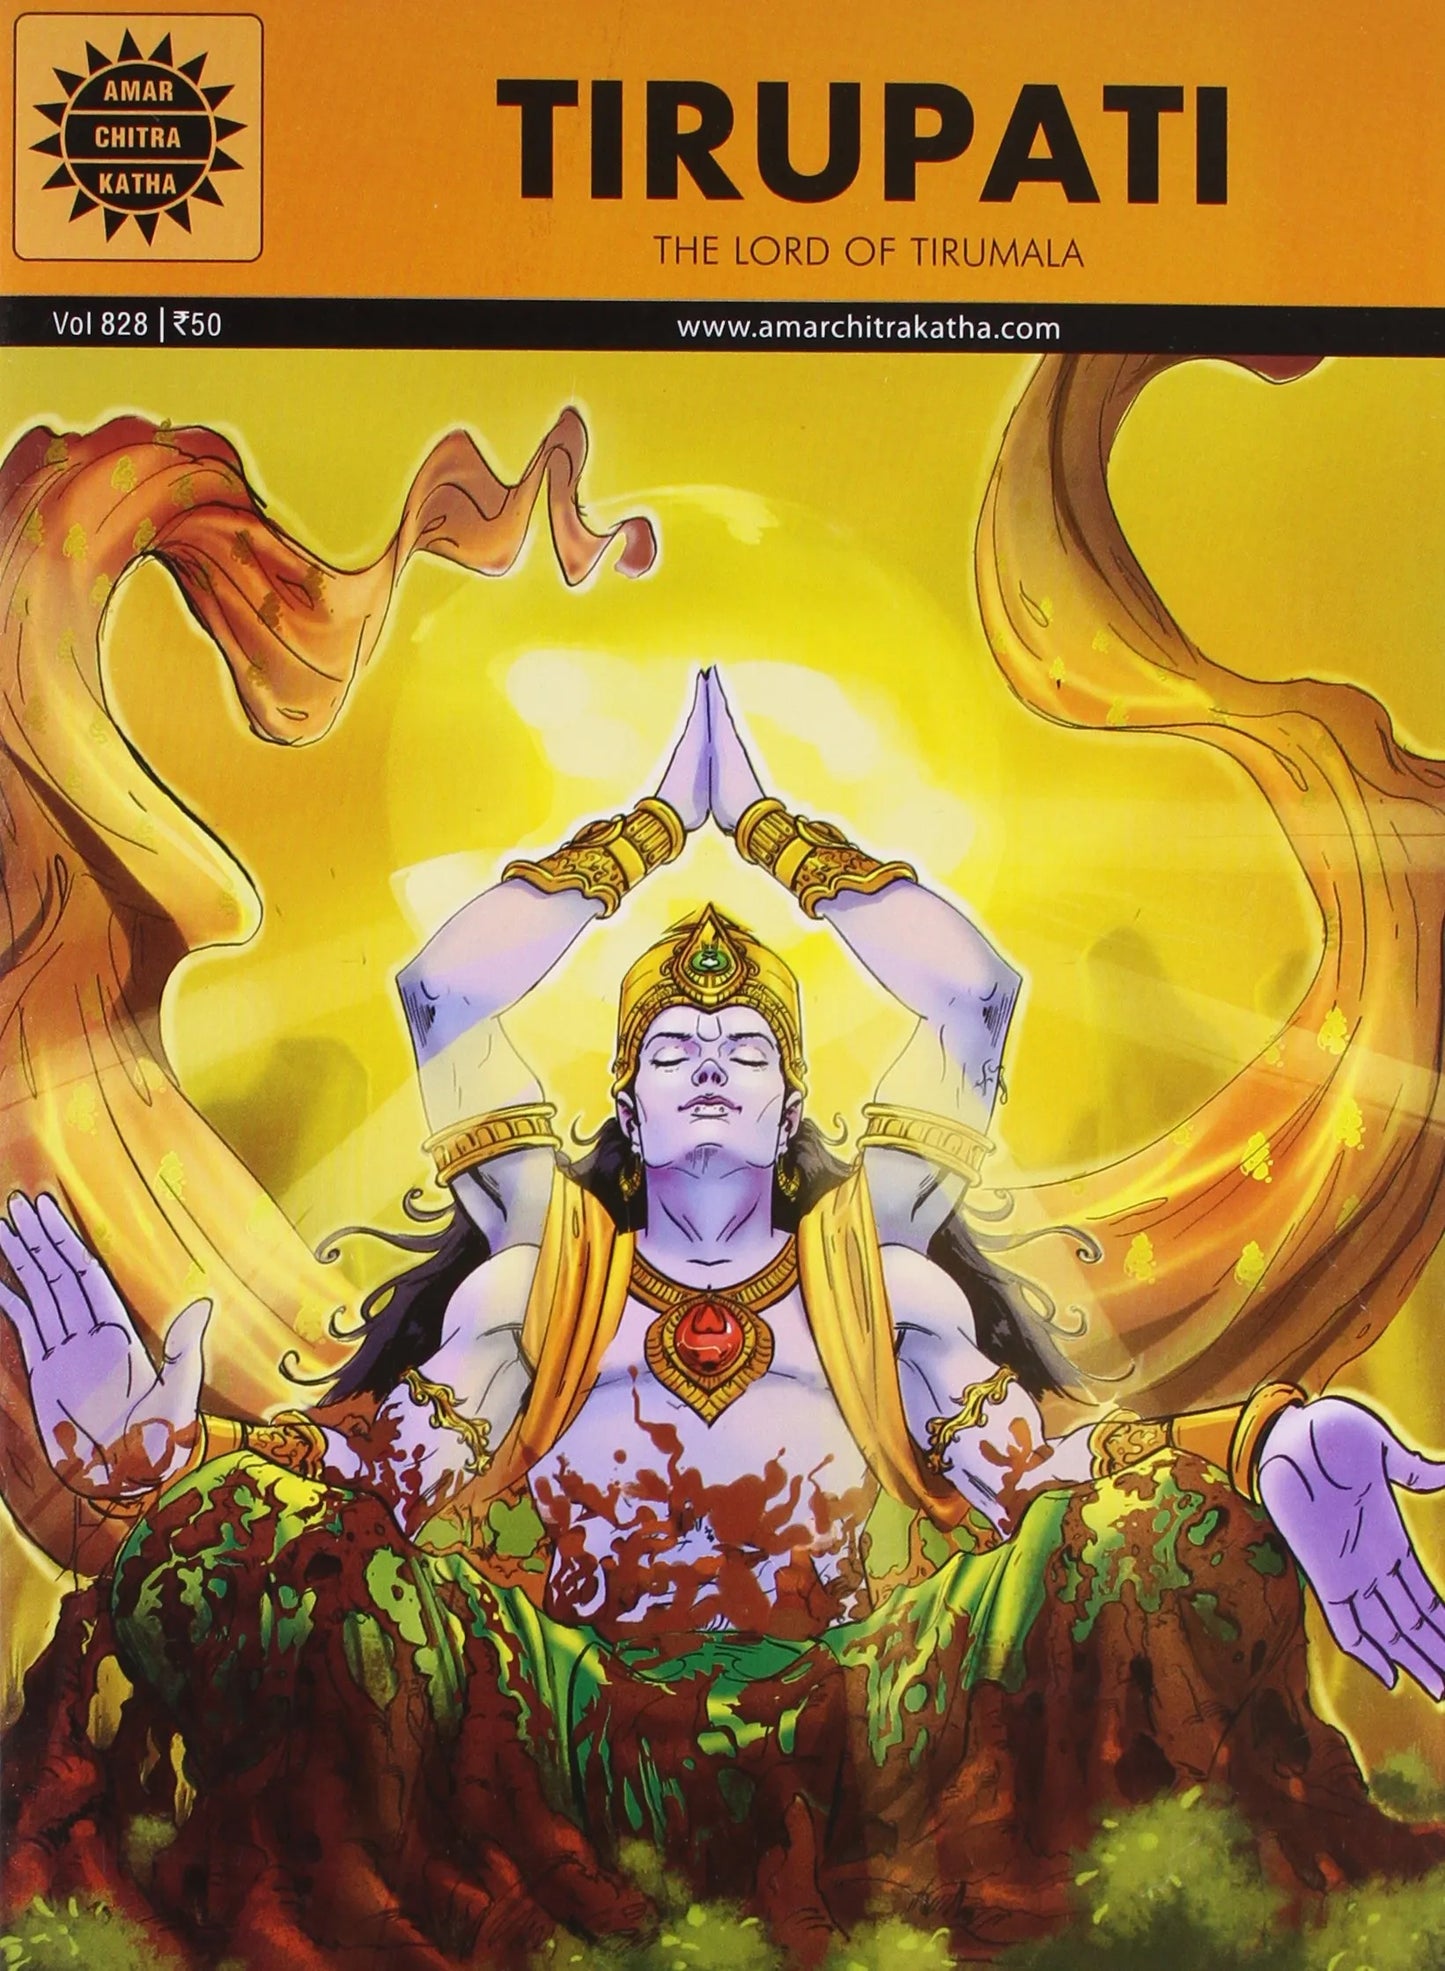 Amar Chitra Katha - Tirupati - The Lord of Tirumala